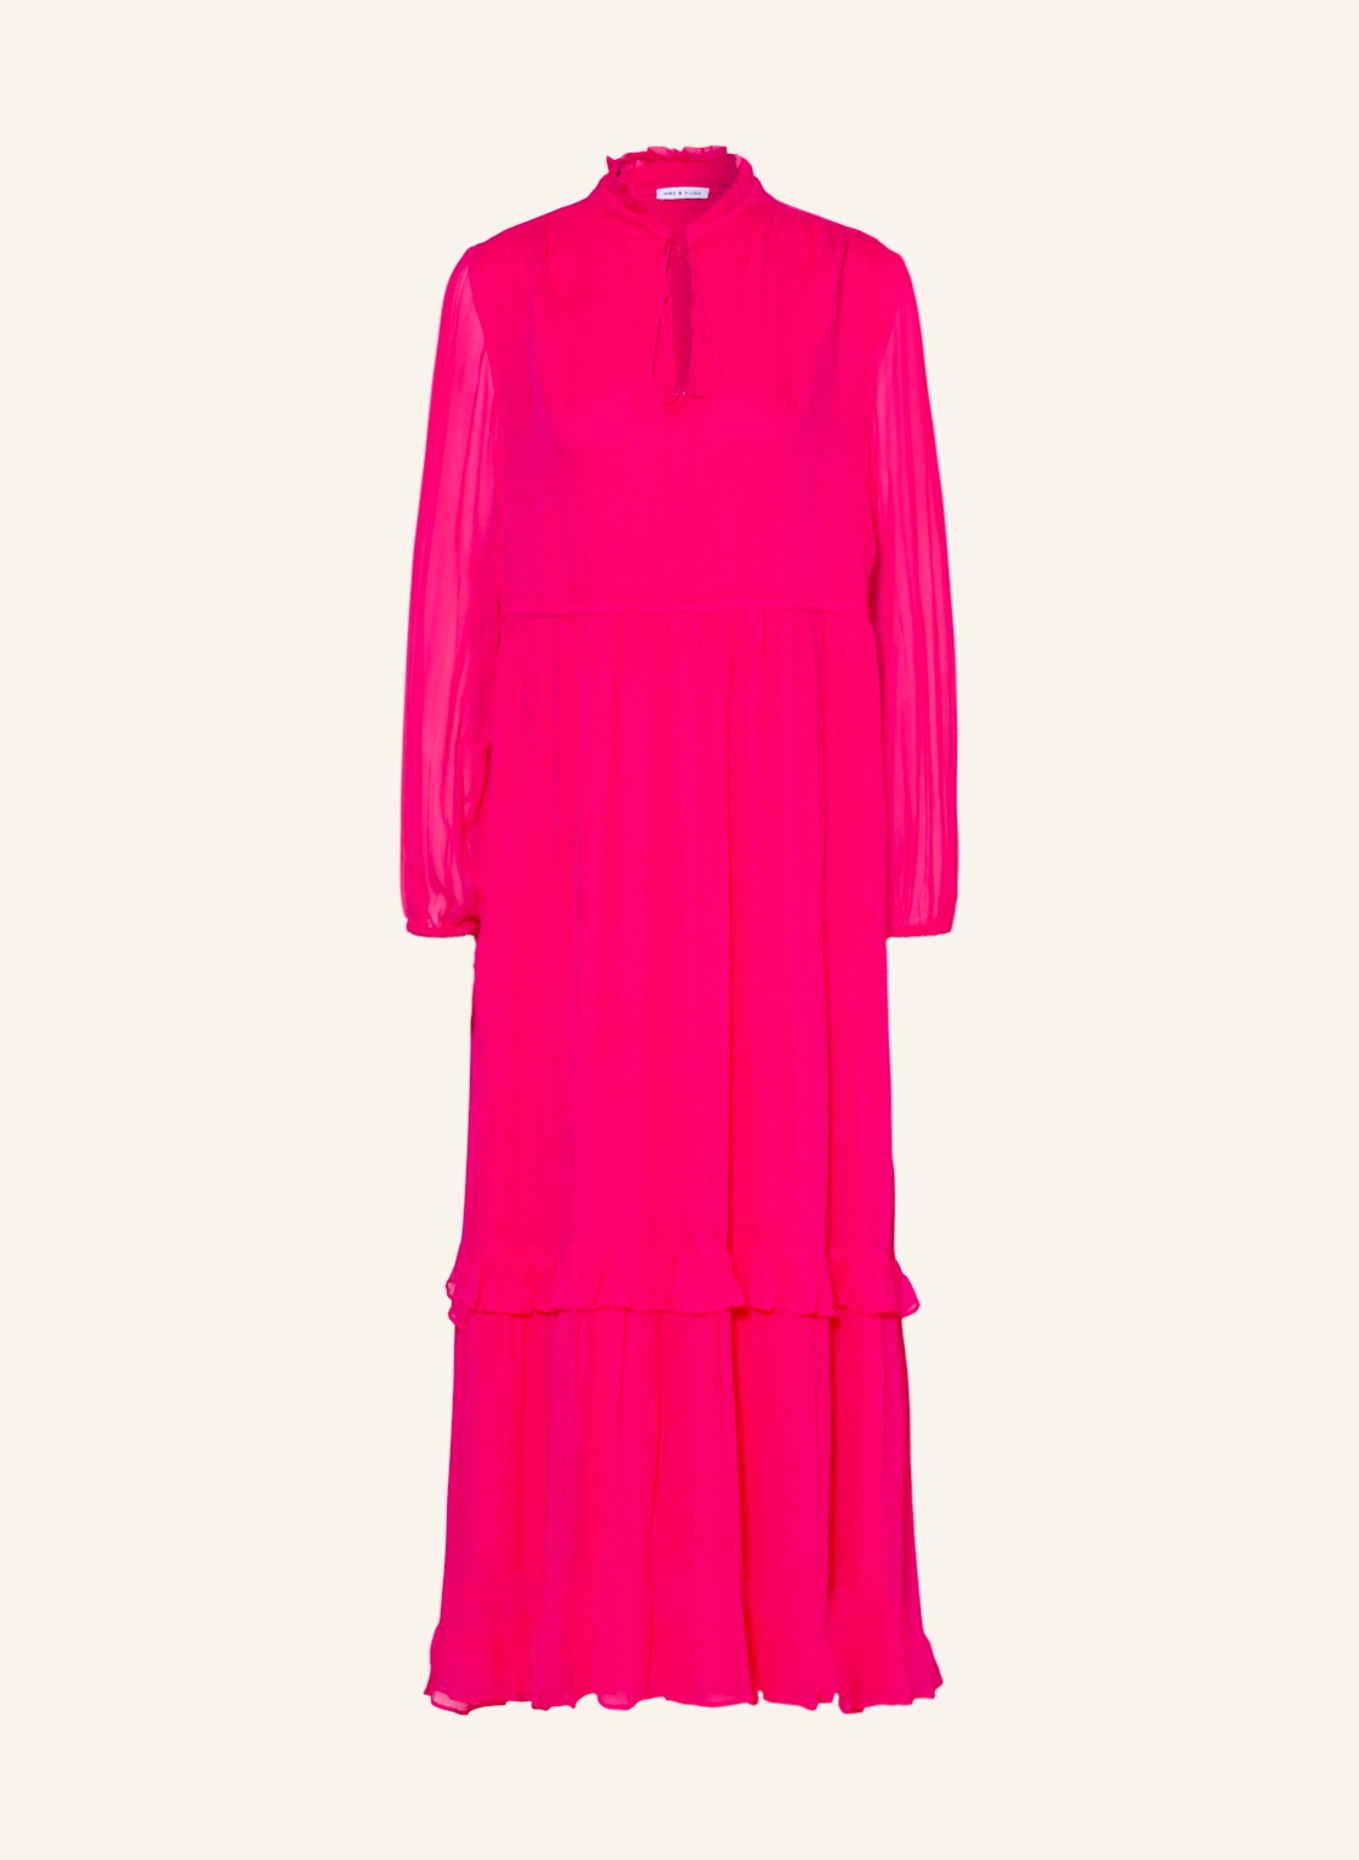 MRS & HUGS Dress, Color: PINK (Image 1)